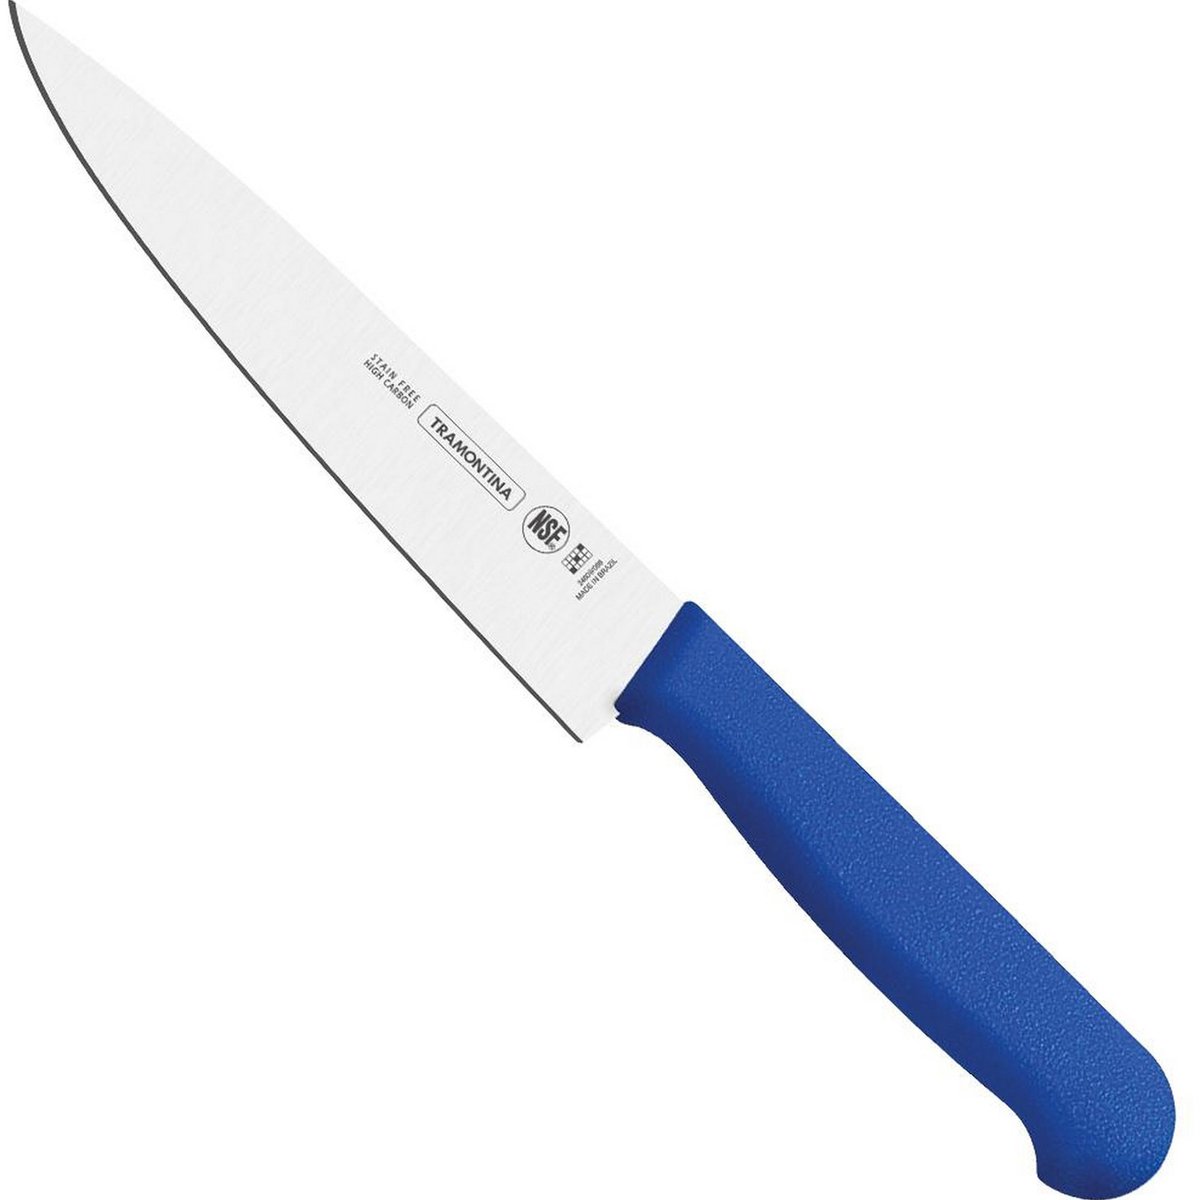 ترامونتينا سكين لحم 10 بوصة  BE-24620/110